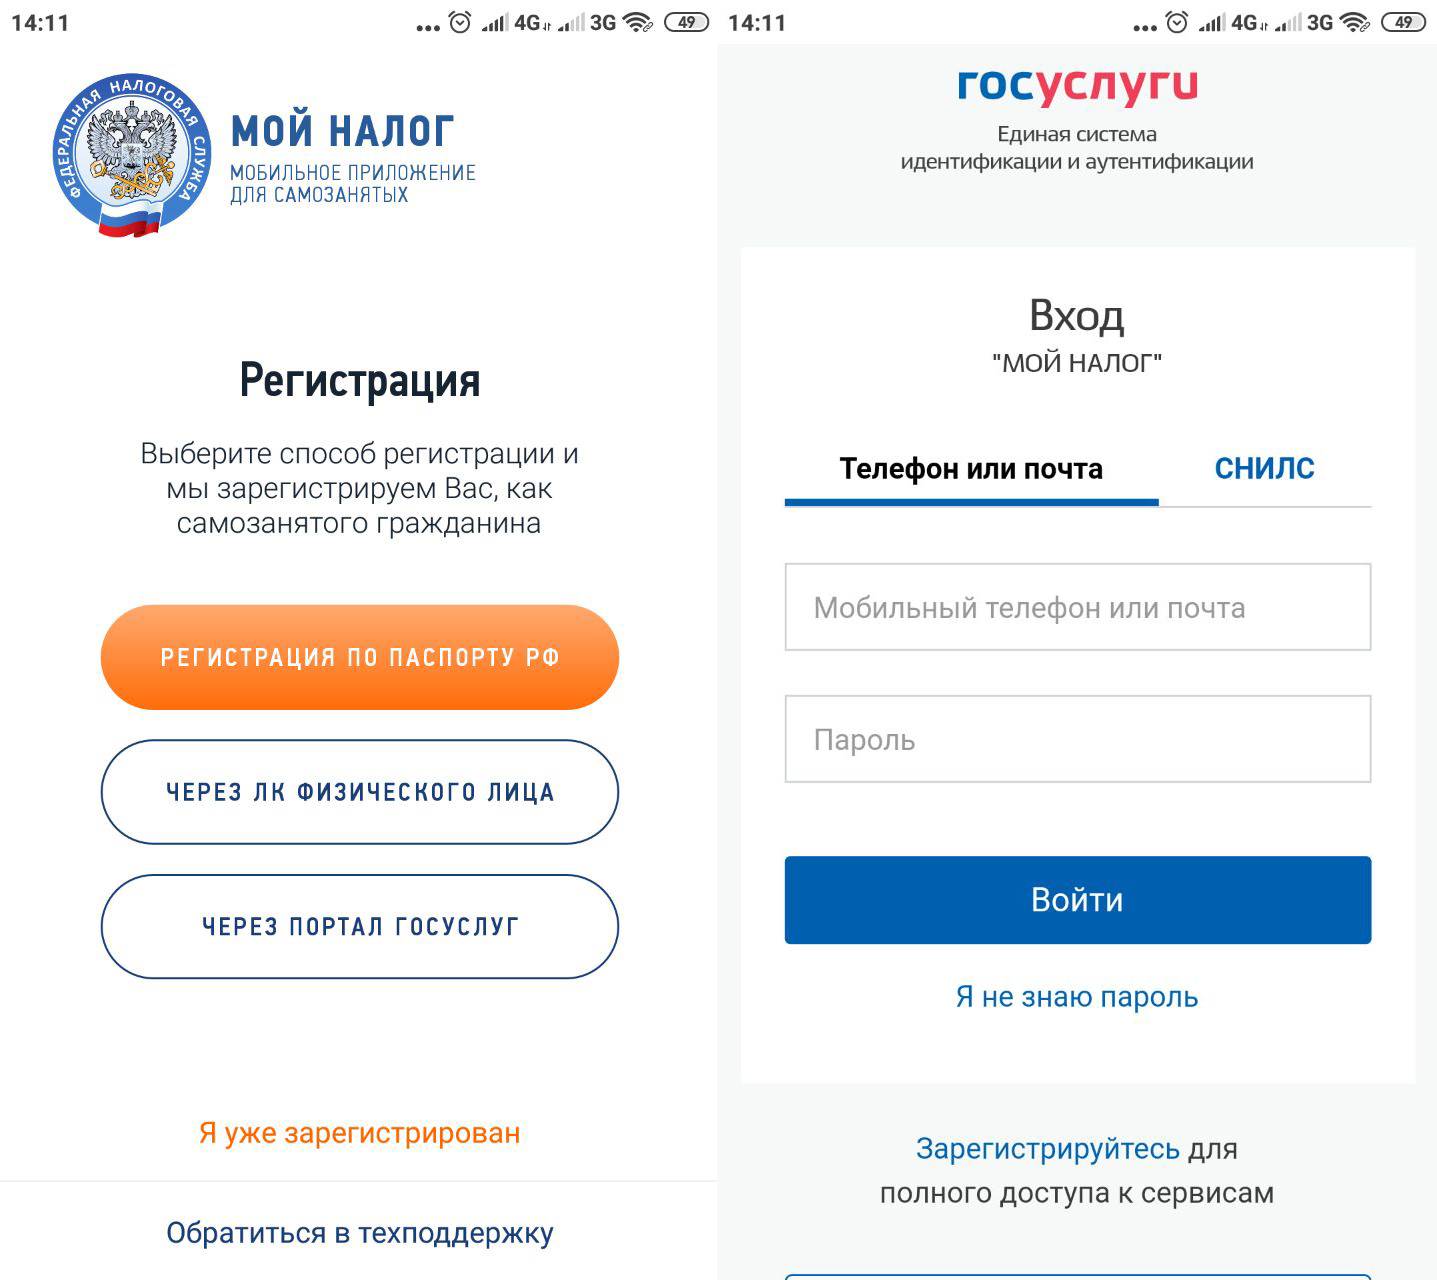 Как зарегистрировать ип онлайн в 2021 году через интернет — на сайте фнс и портале госуслуги.ру